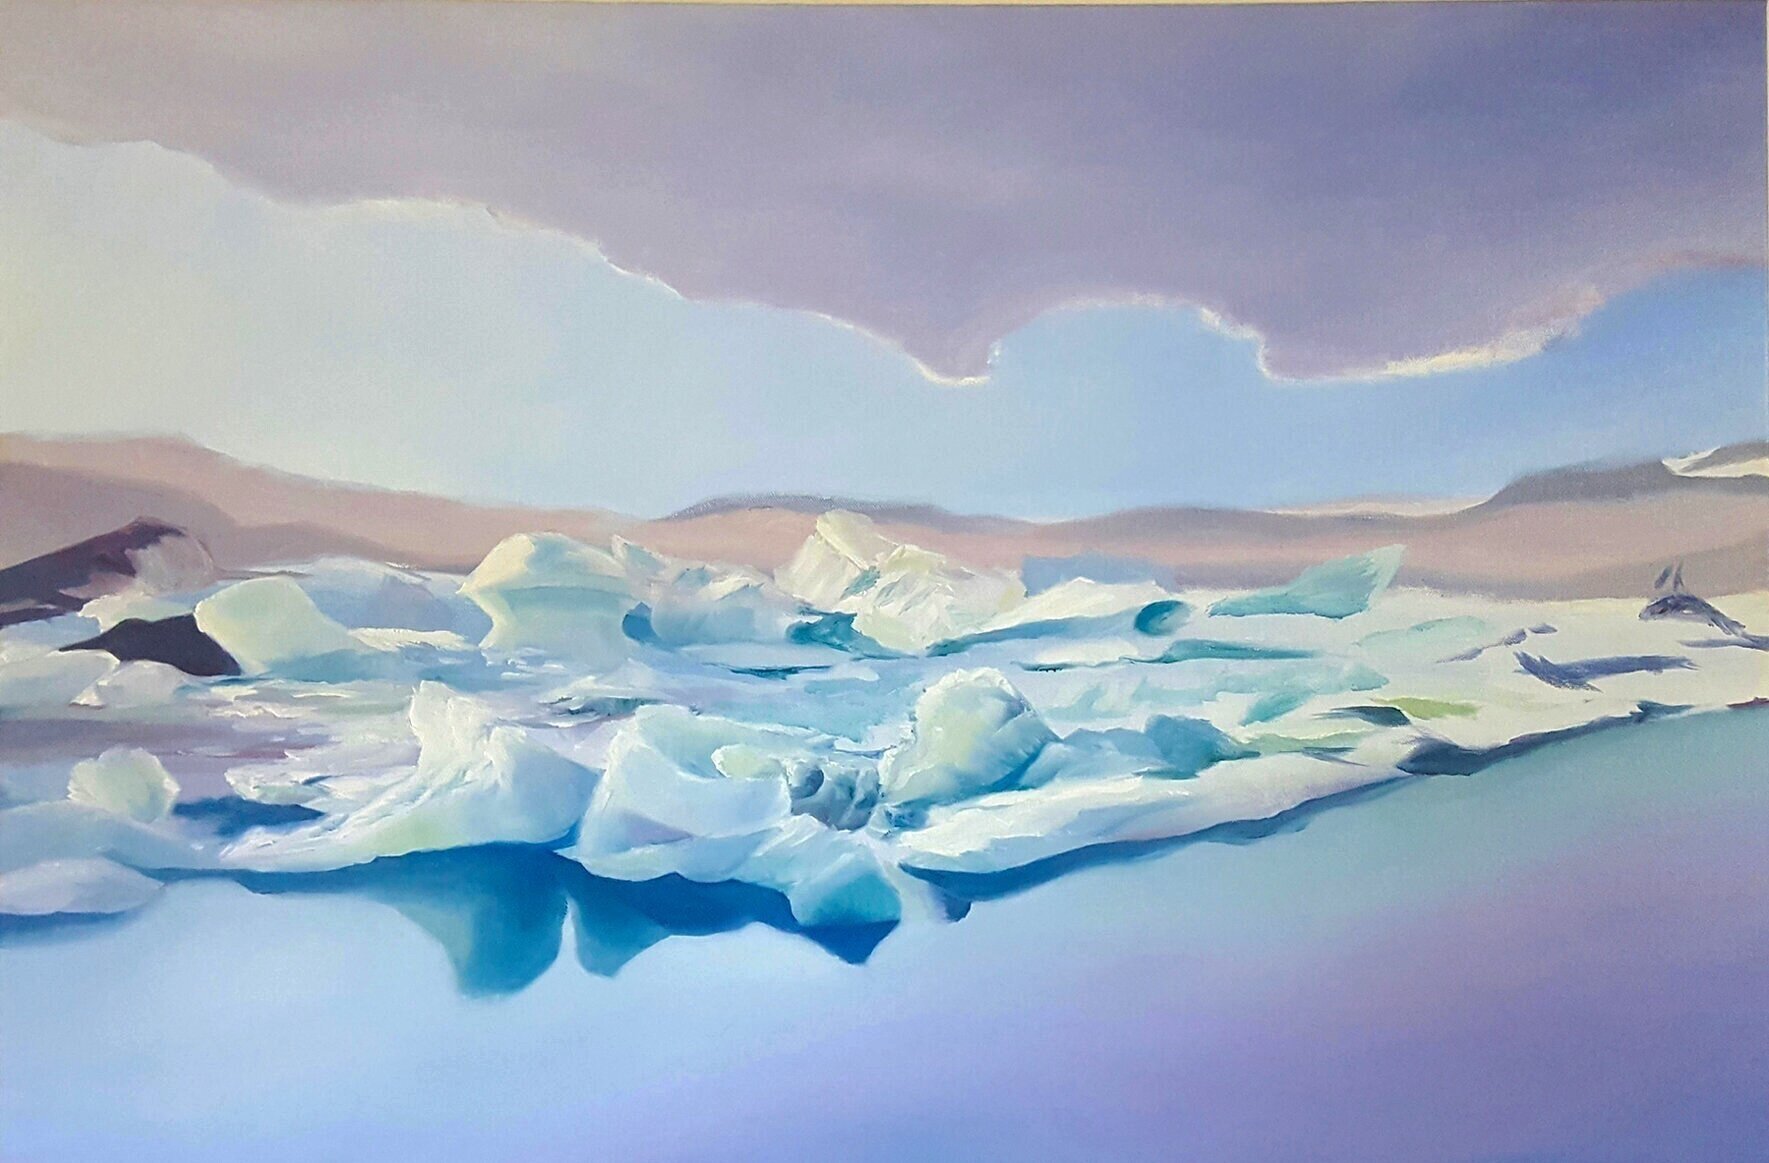  10 hours on the road: Jökulsárlón glacier lagoon, Iceland. Oil on canvas.  